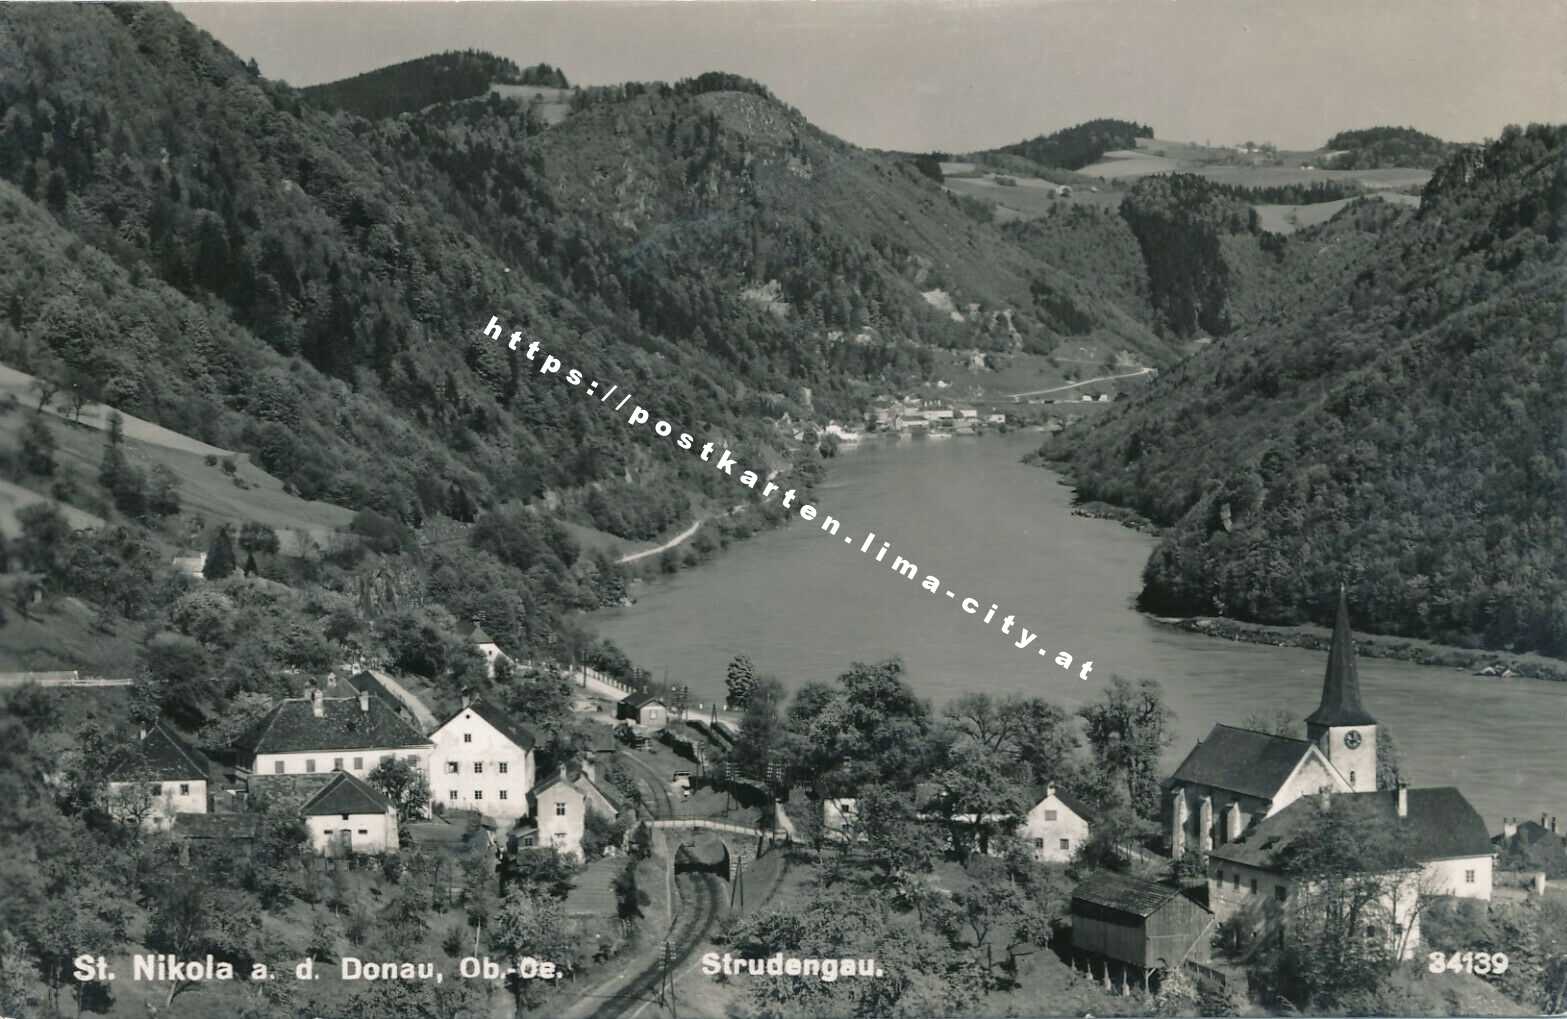 St. Nikola an der Donau 1960